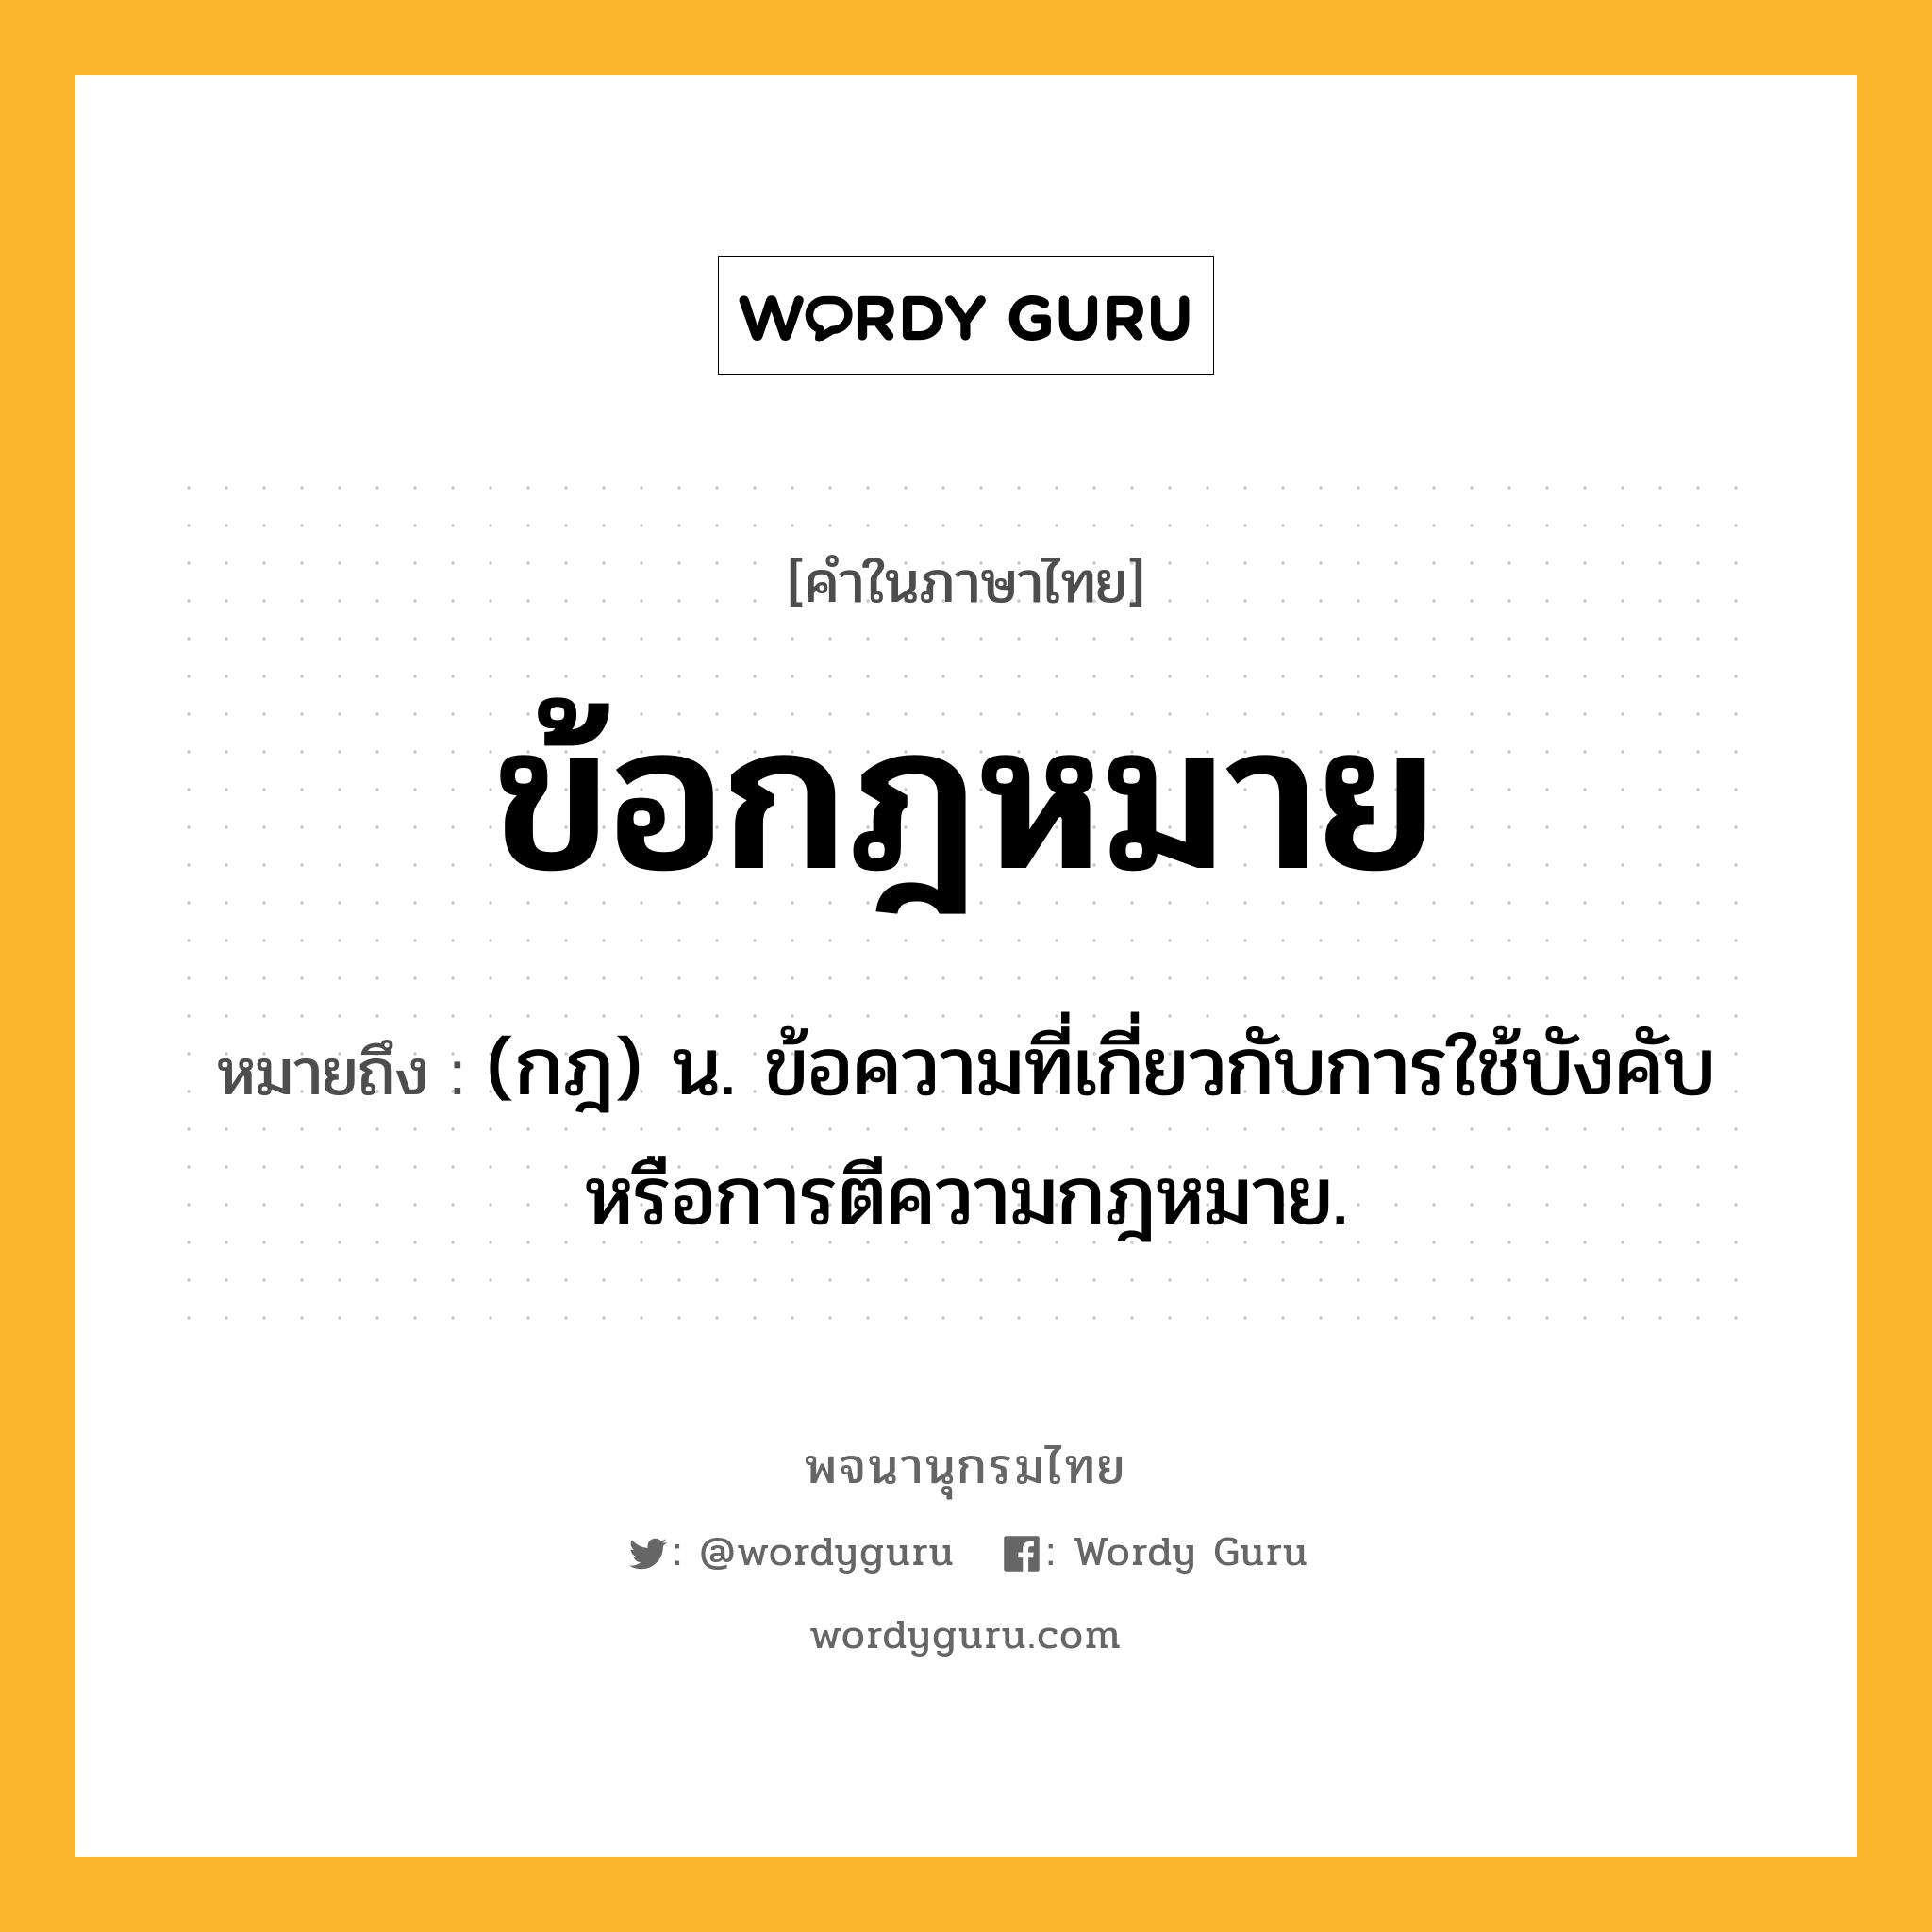 ข้อกฎหมาย ความหมาย หมายถึงอะไร?, คำในภาษาไทย ข้อกฎหมาย หมายถึง (กฎ) น. ข้อความที่เกี่ยวกับการใช้บังคับหรือการตีความกฎหมาย.